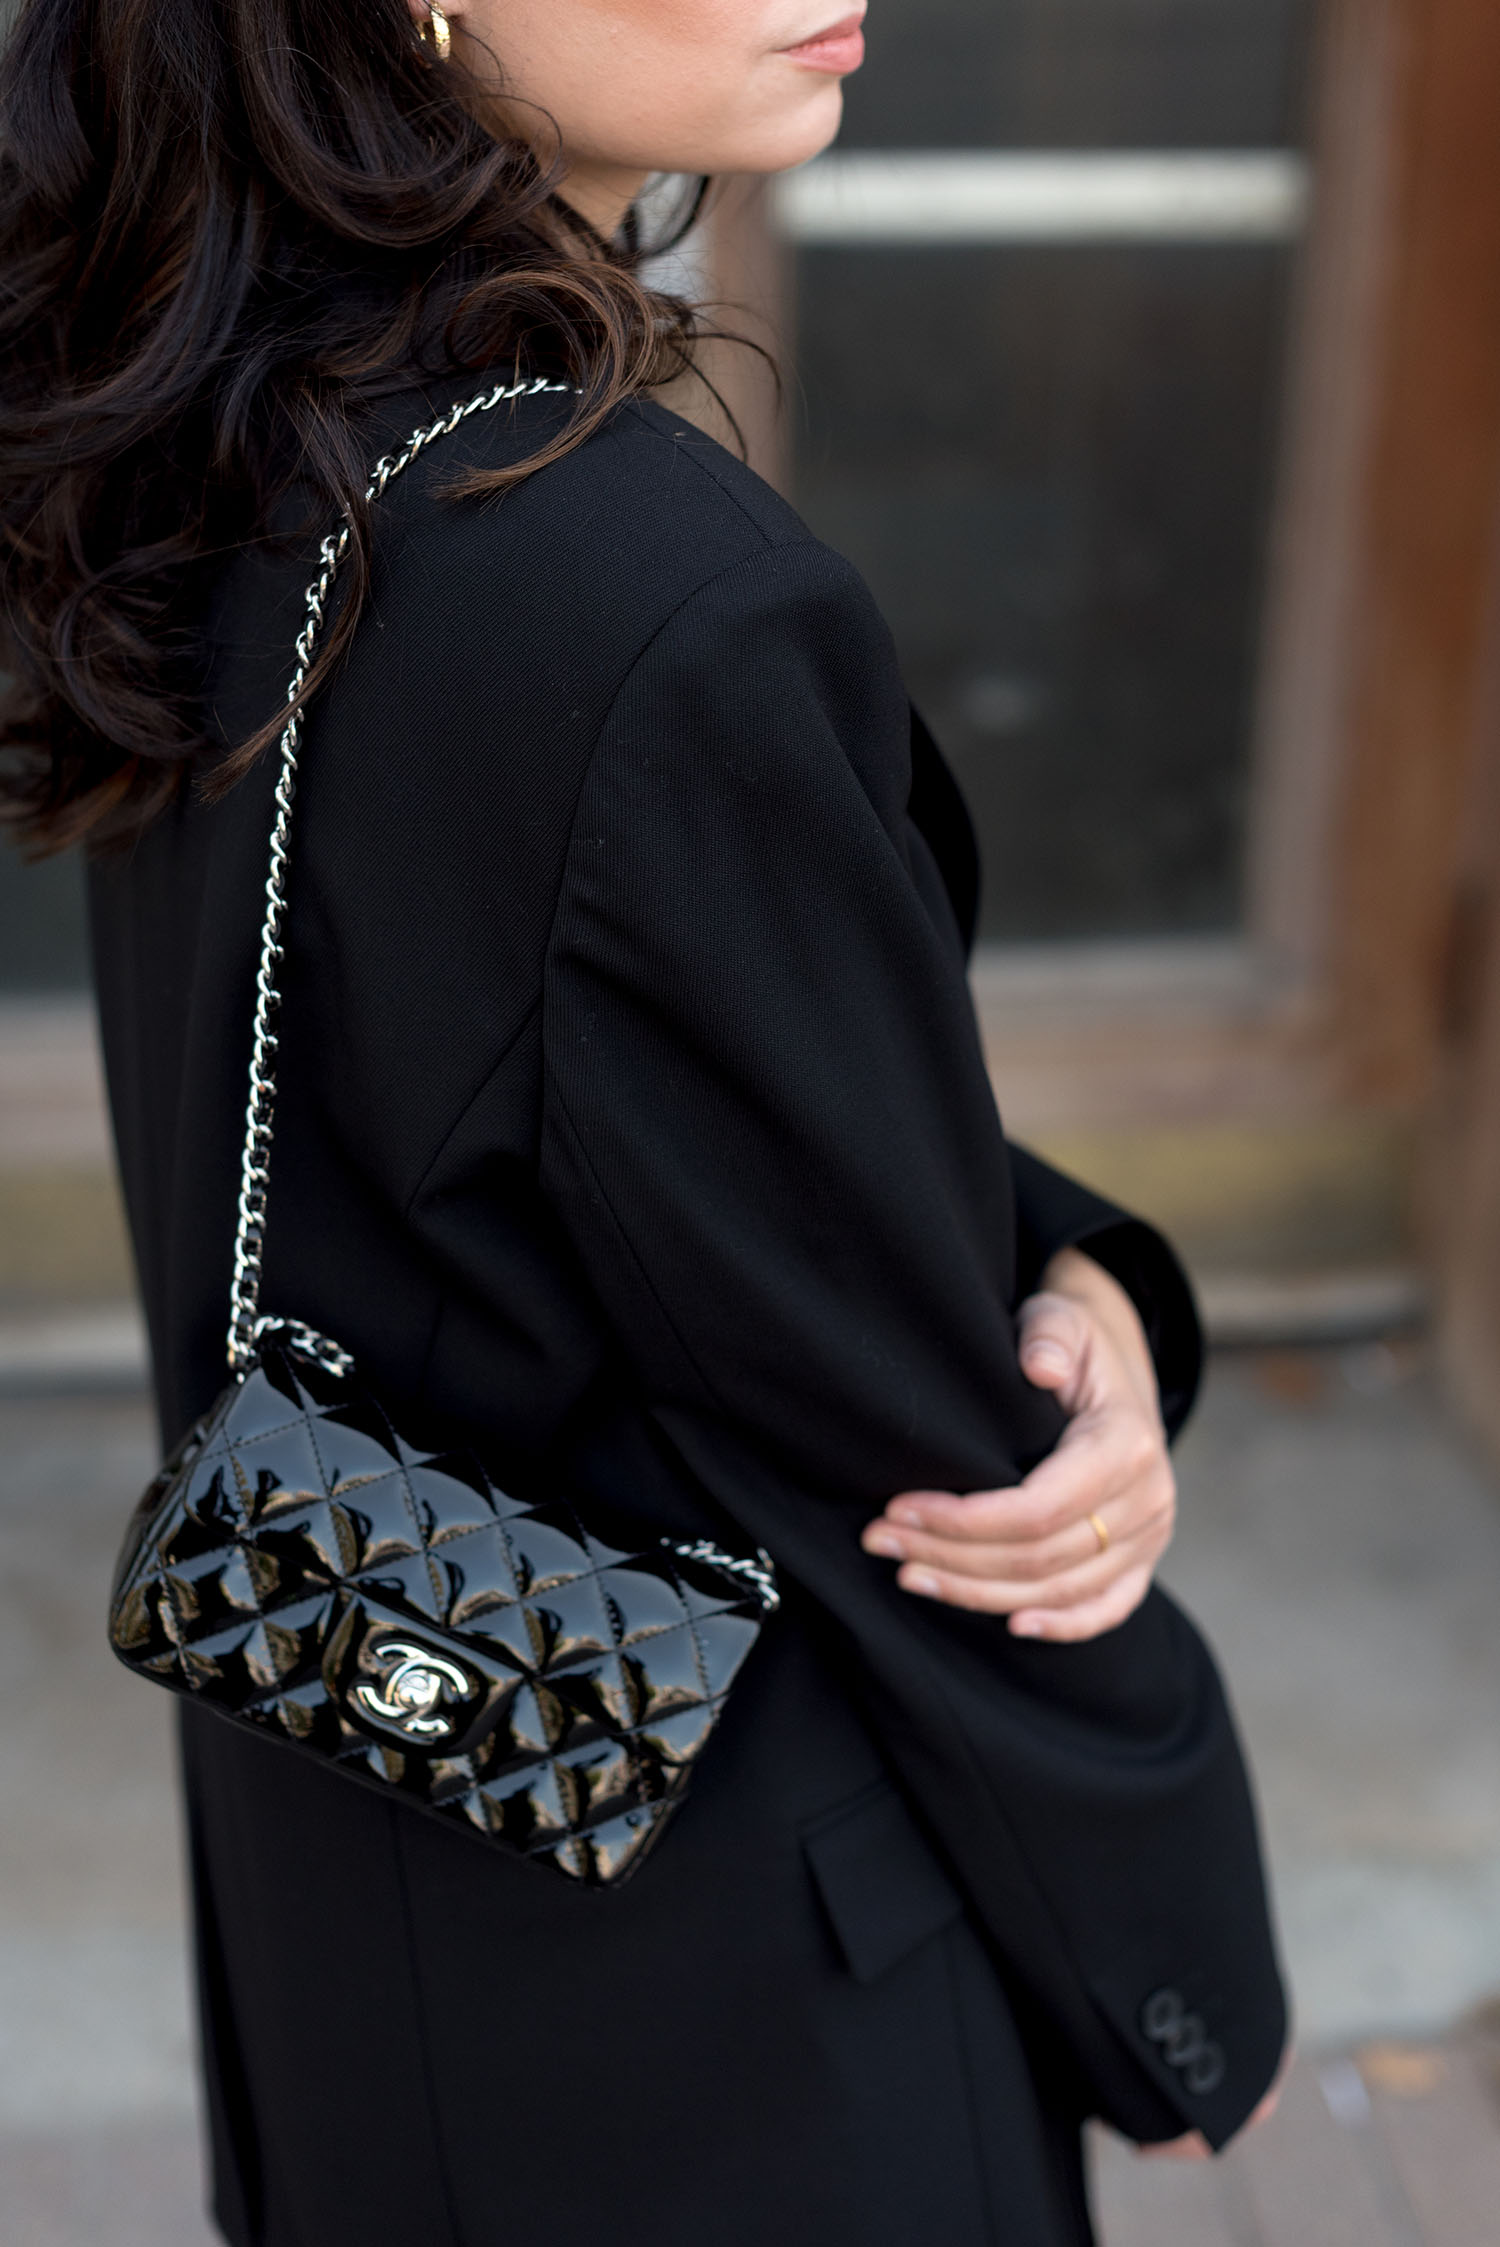 Coco & Vera - Chanel handbag, Wilfred Agency blazer